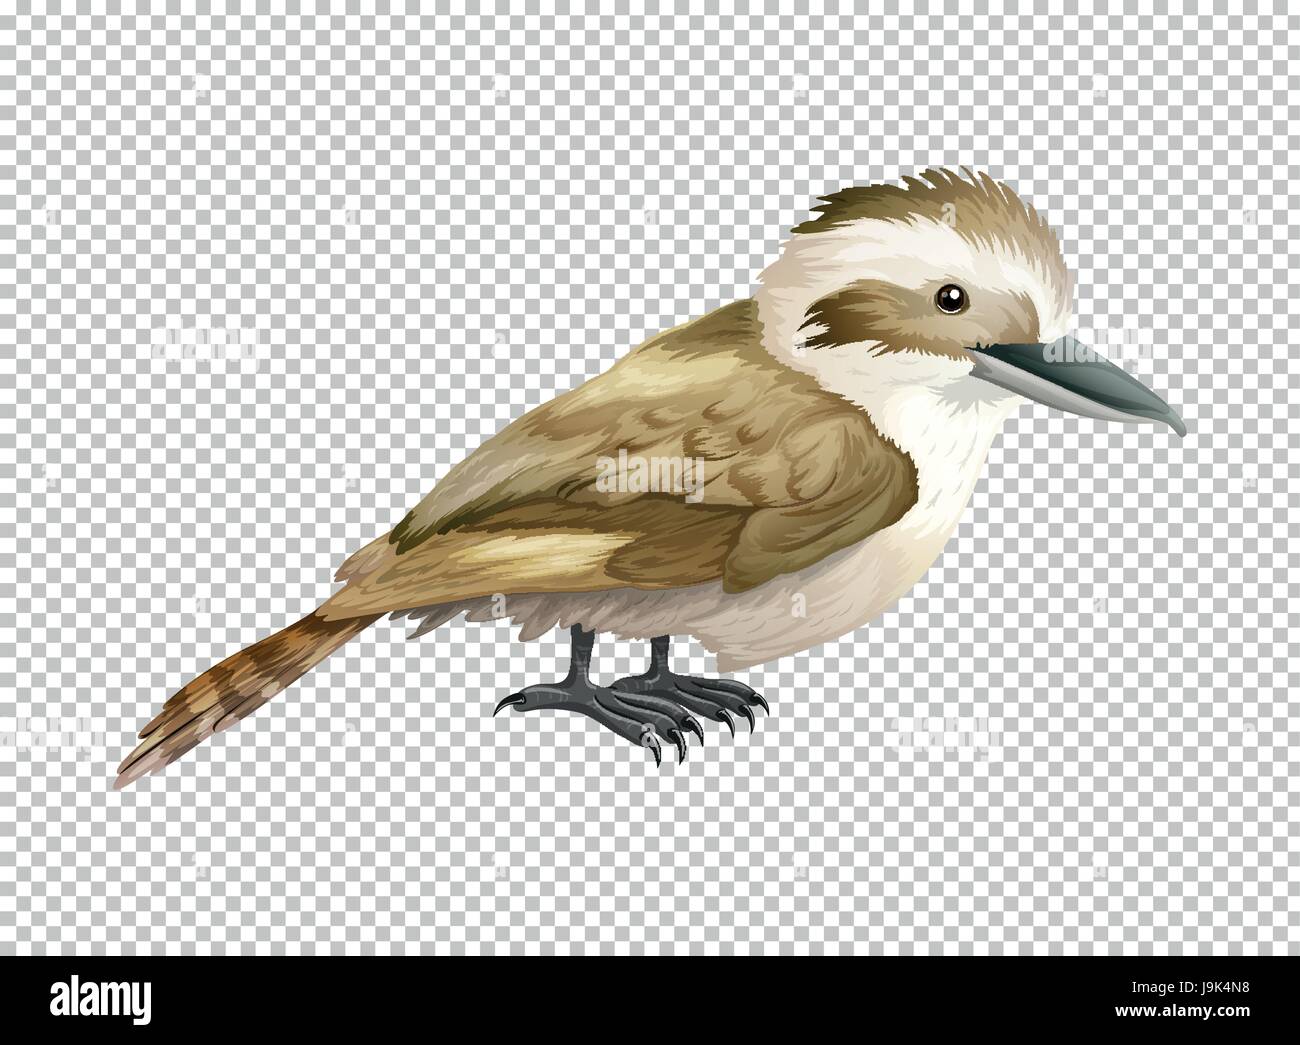 Kookaburra bird on transparent background illustration Stock Vector